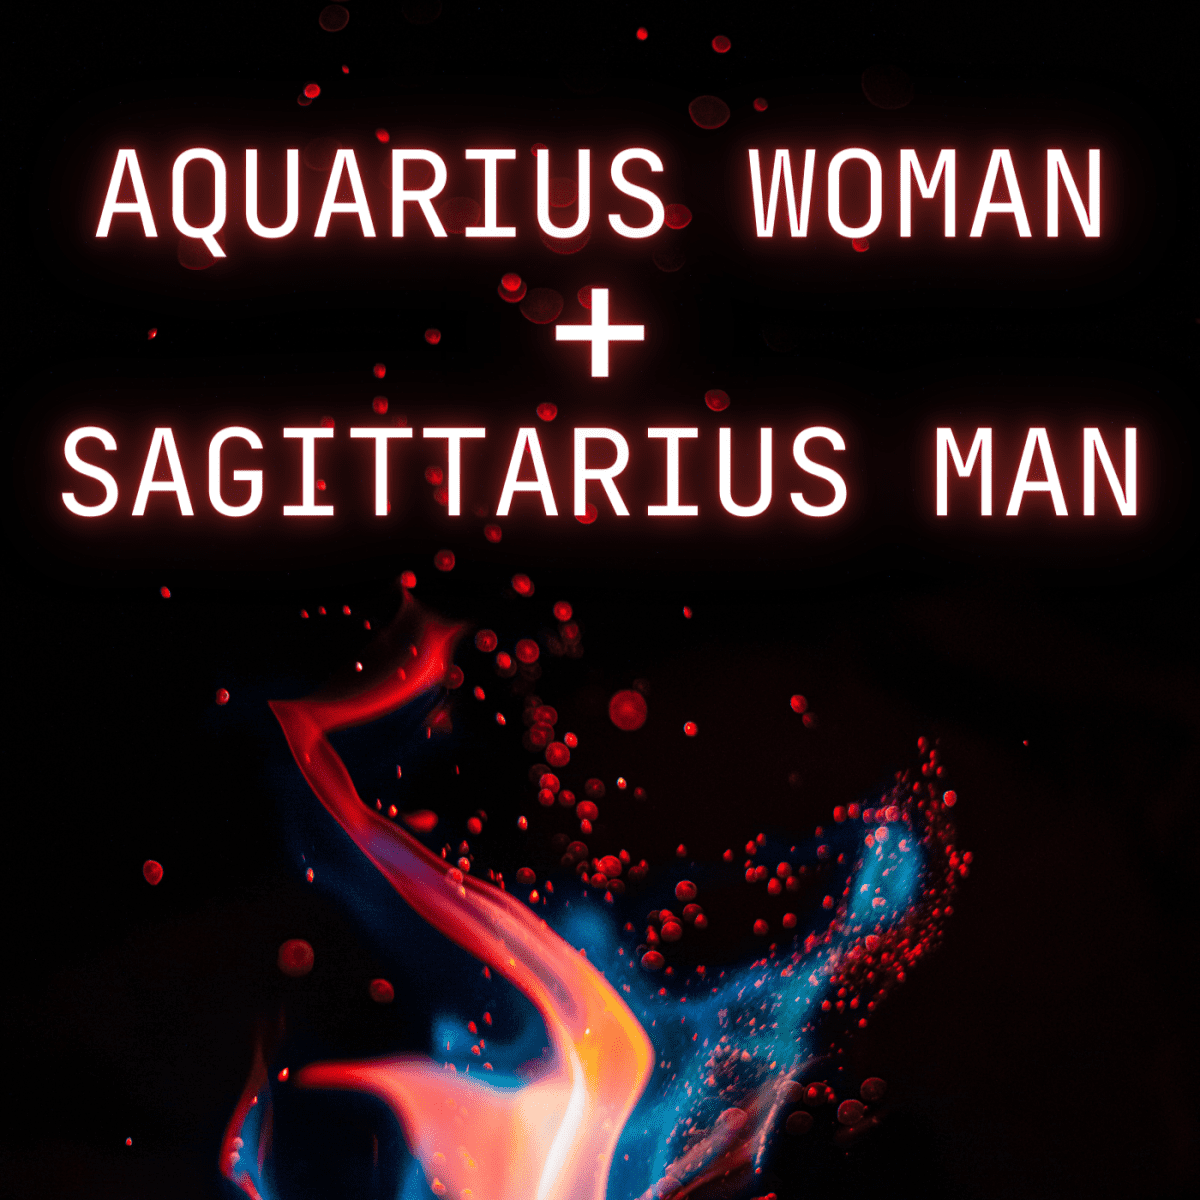 Sagittarius Male Traits